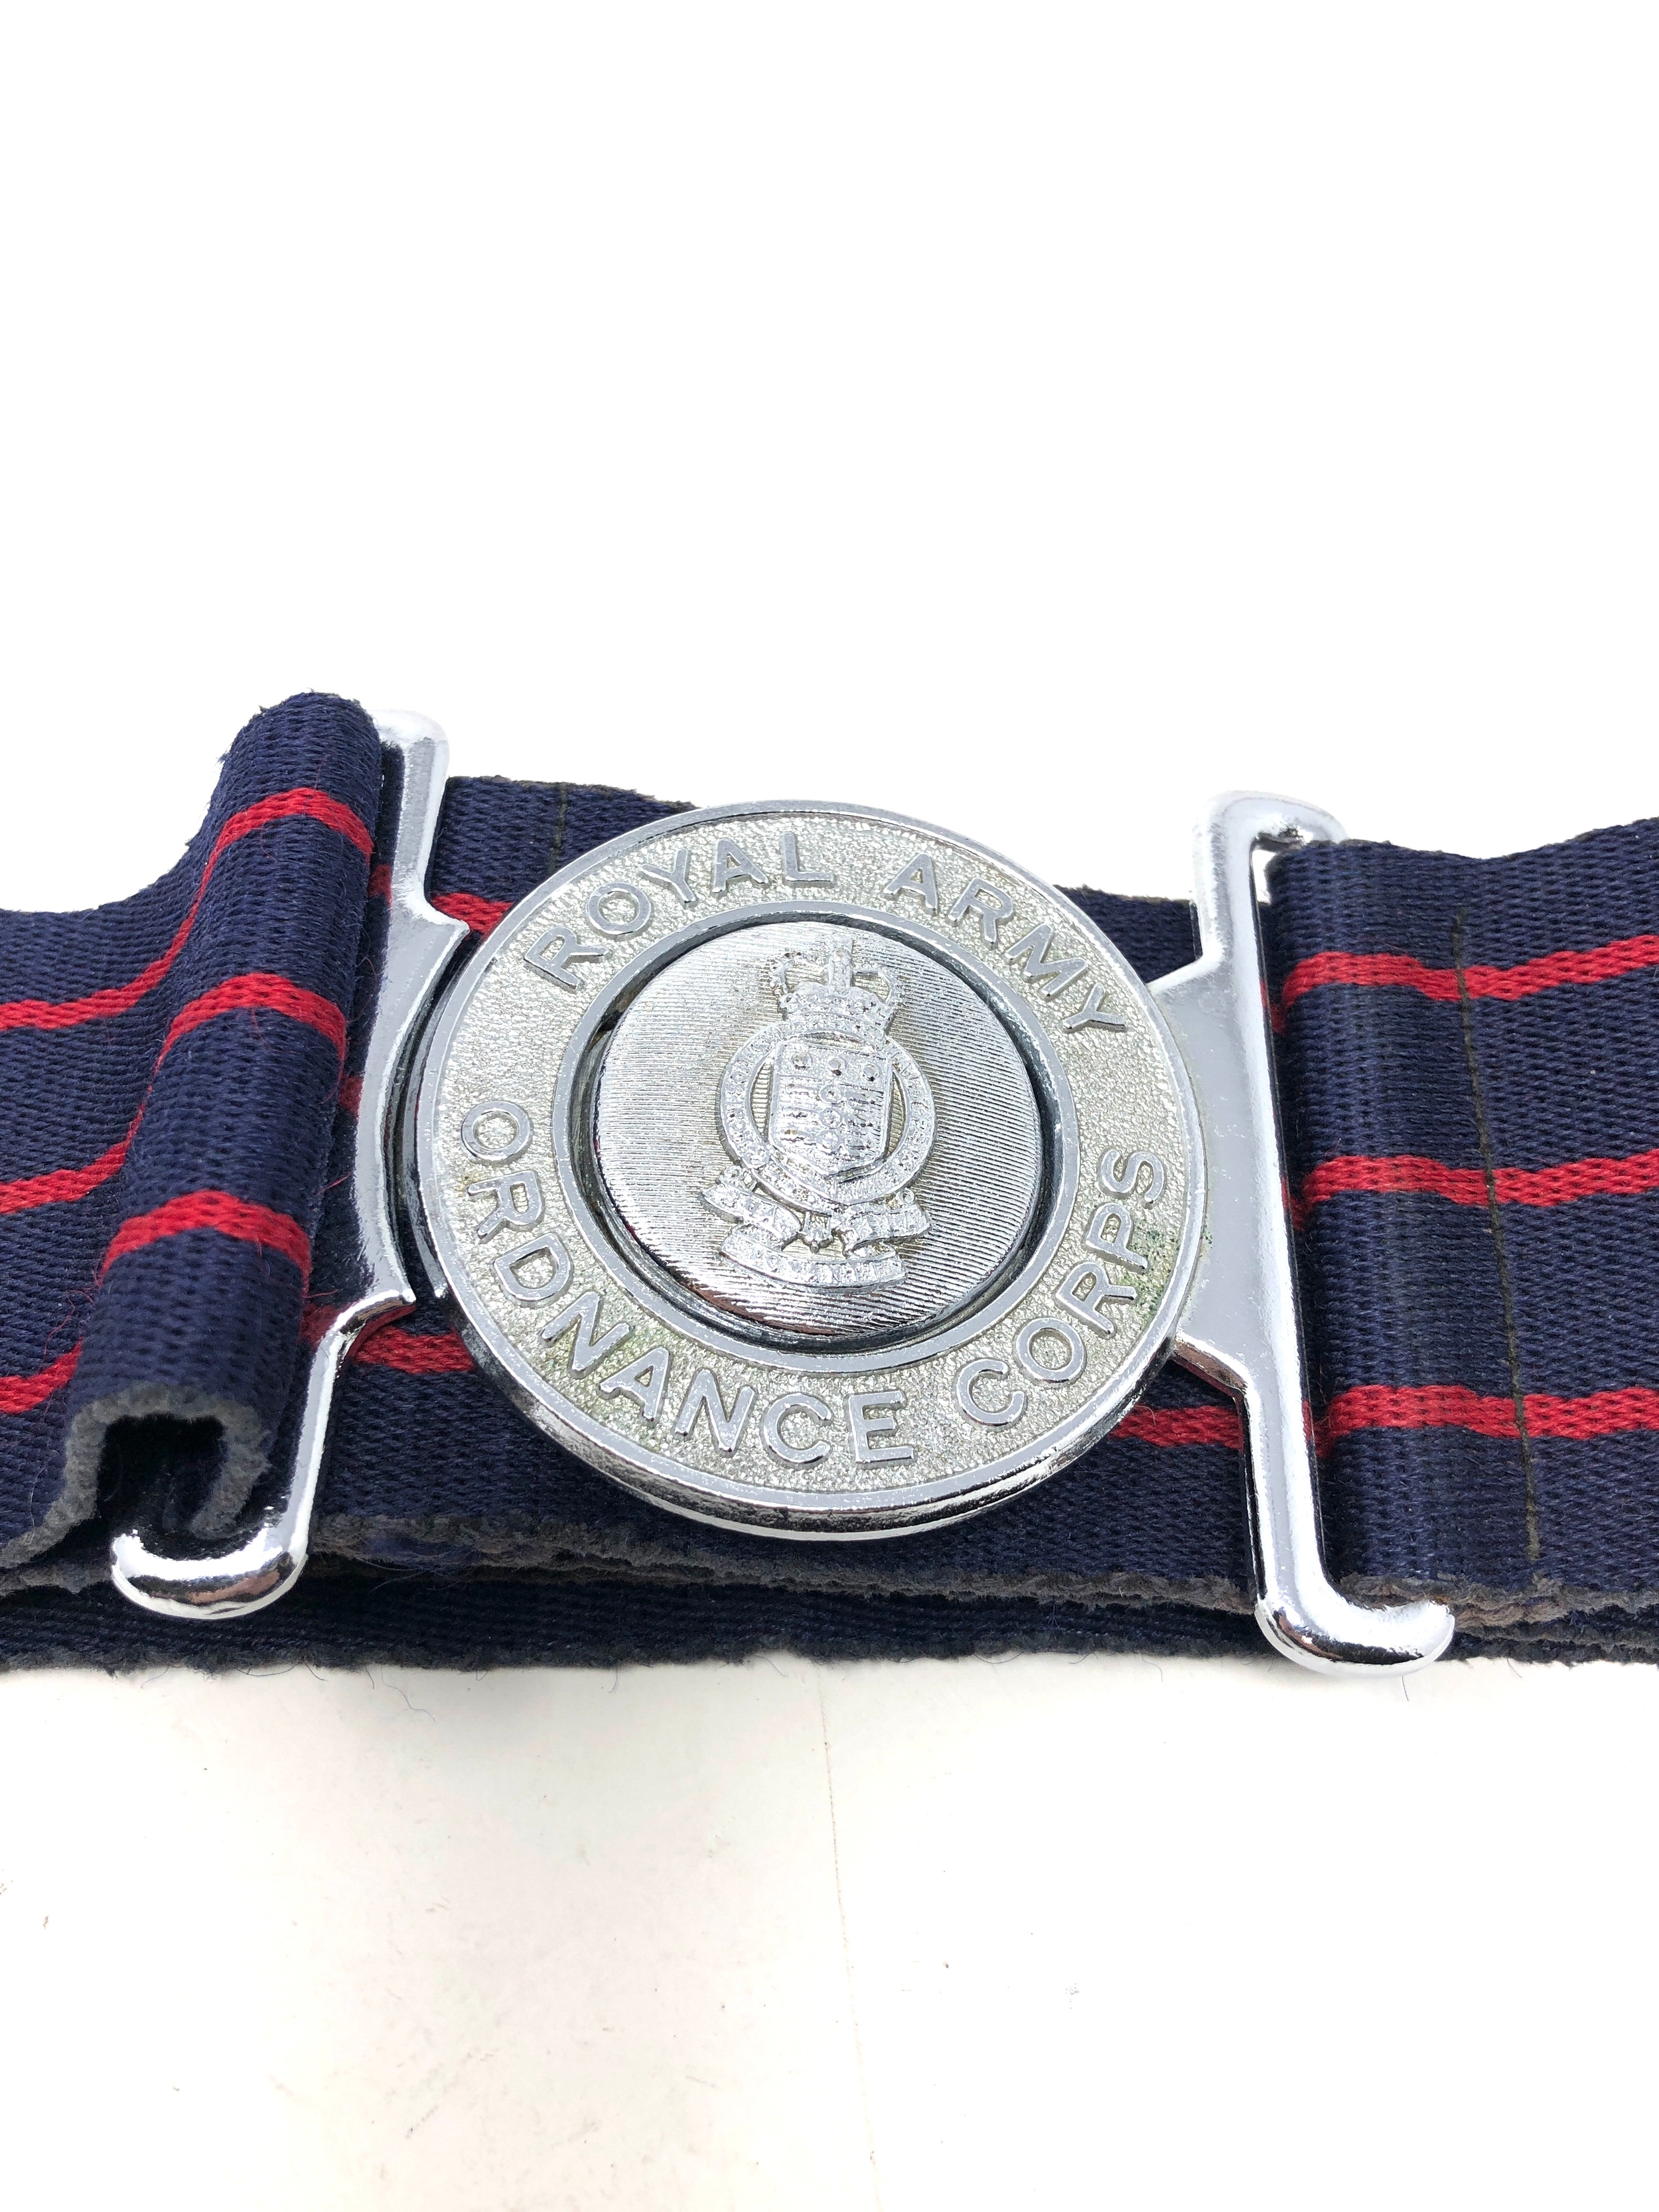 Vintage Royal army ordnance corps belt - Image 2 of 3